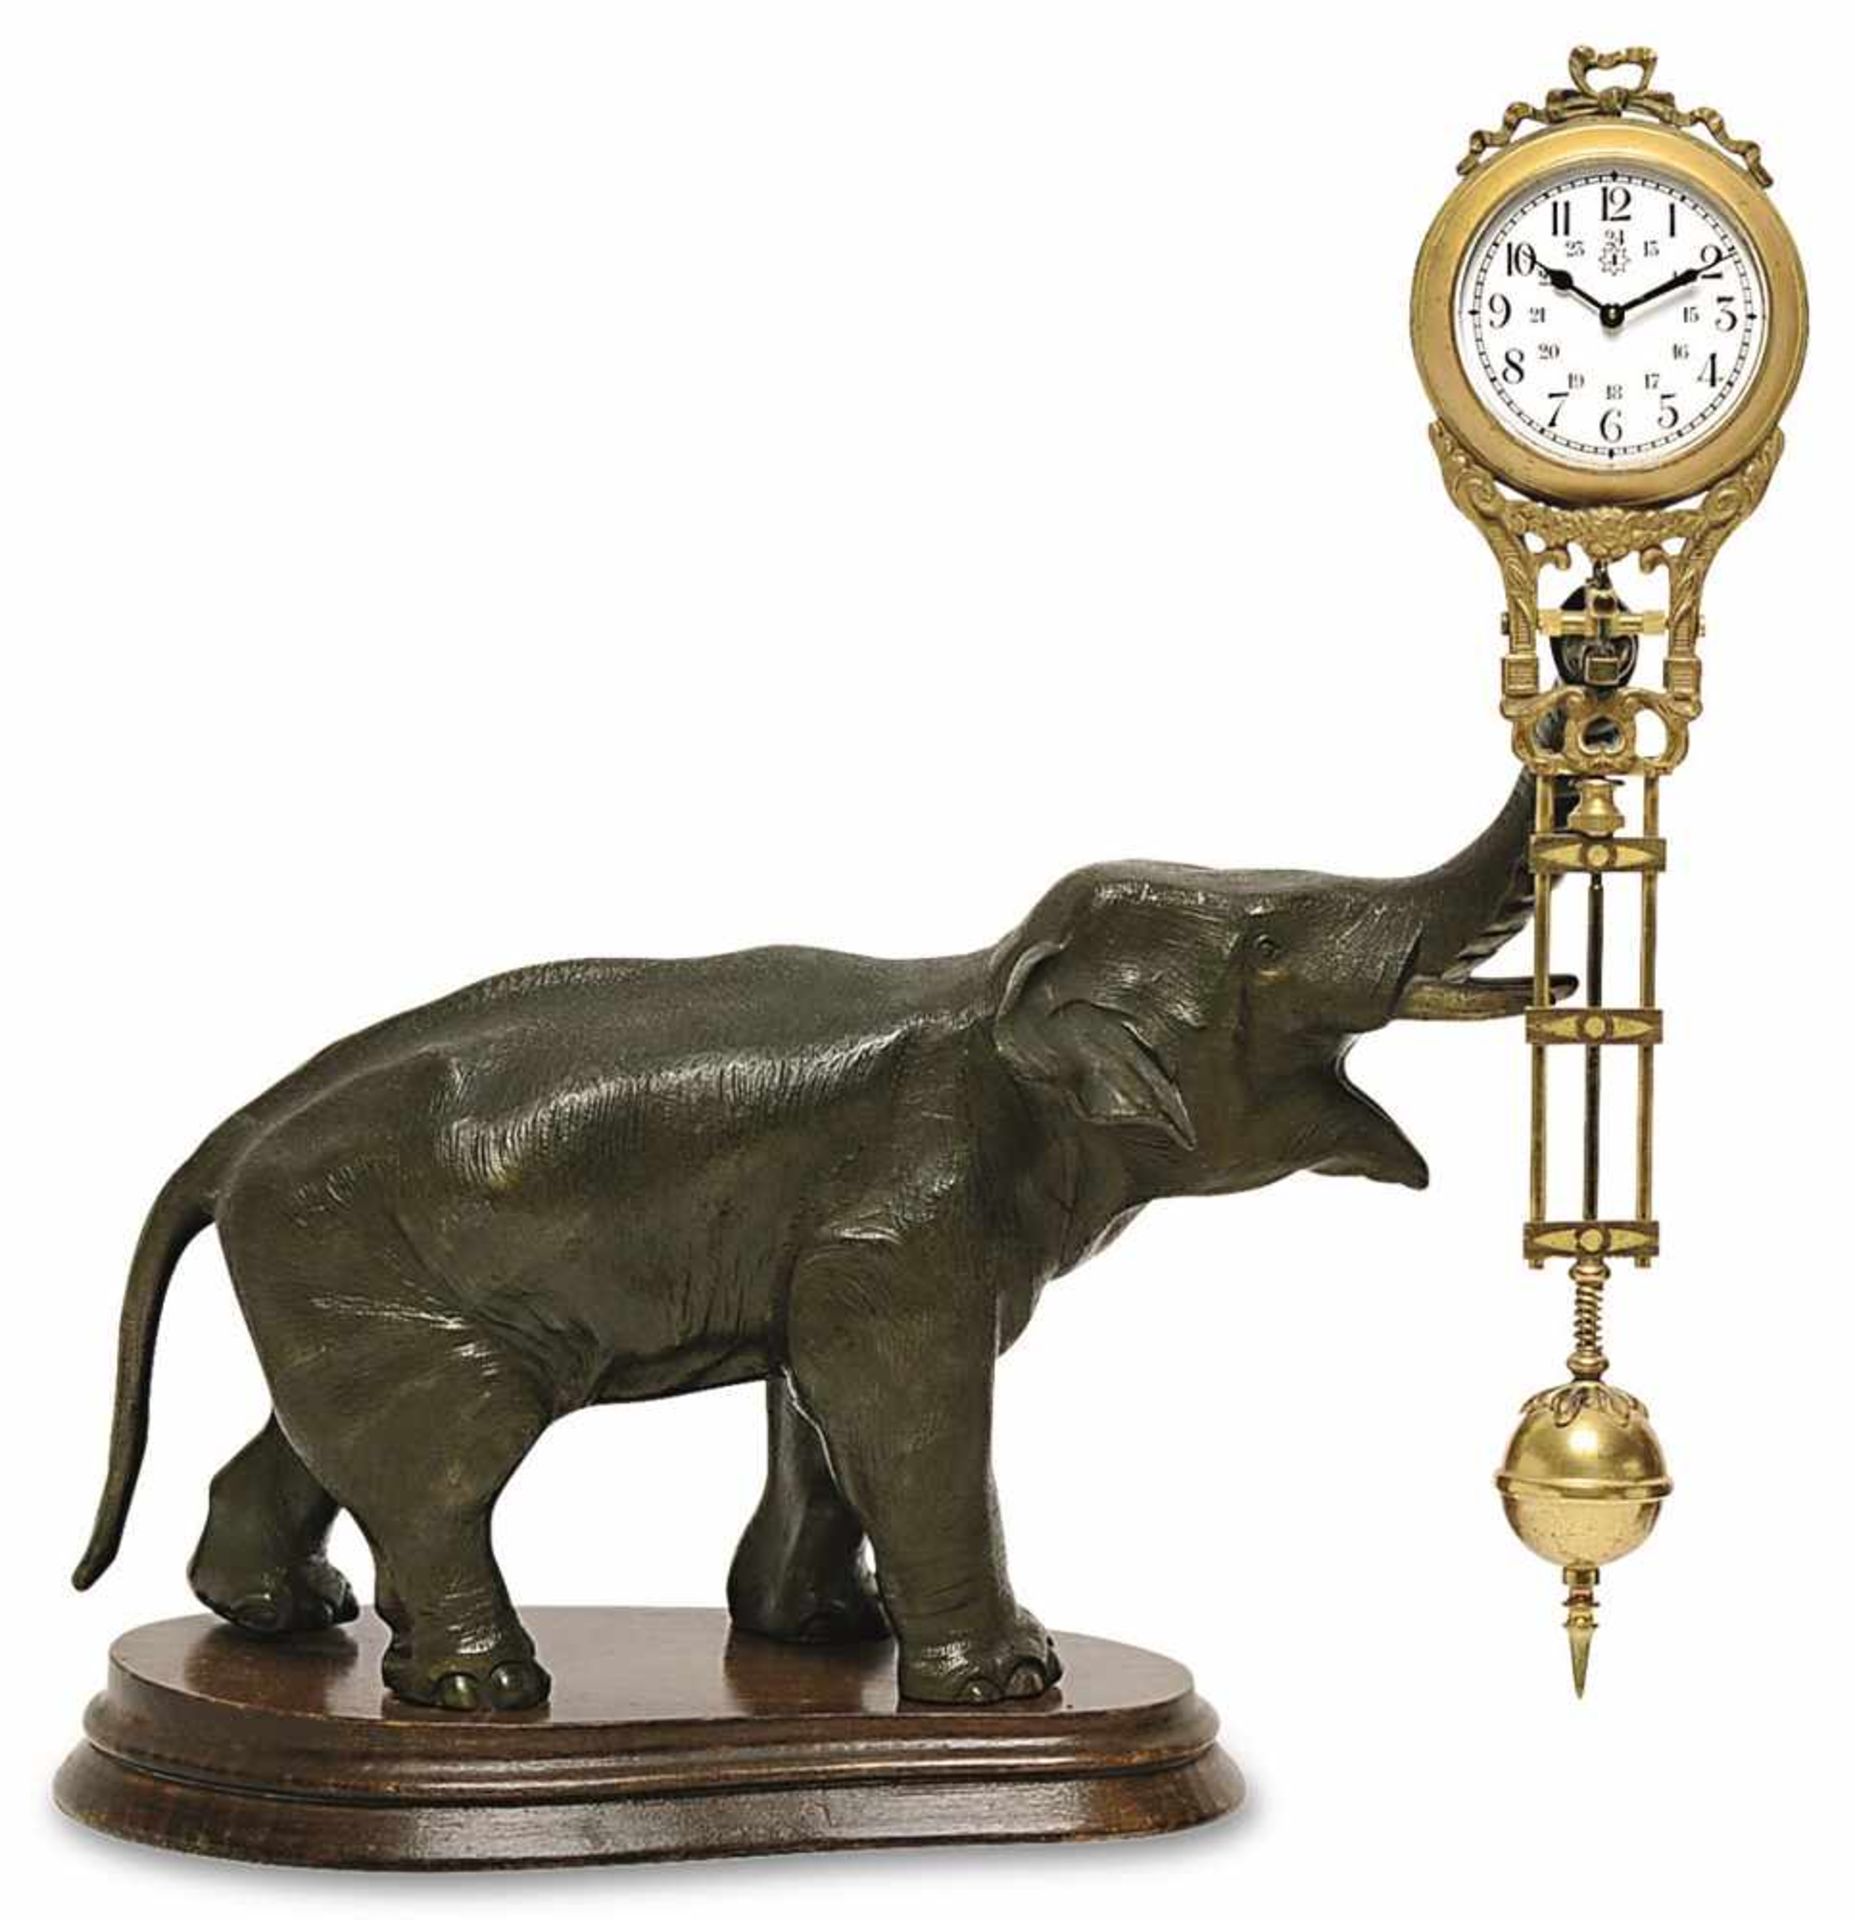 Schwingpendeluhr Um 1900 Metallguss, bronziert. In Form eines Elefanten, der auf der Rüsselspitze